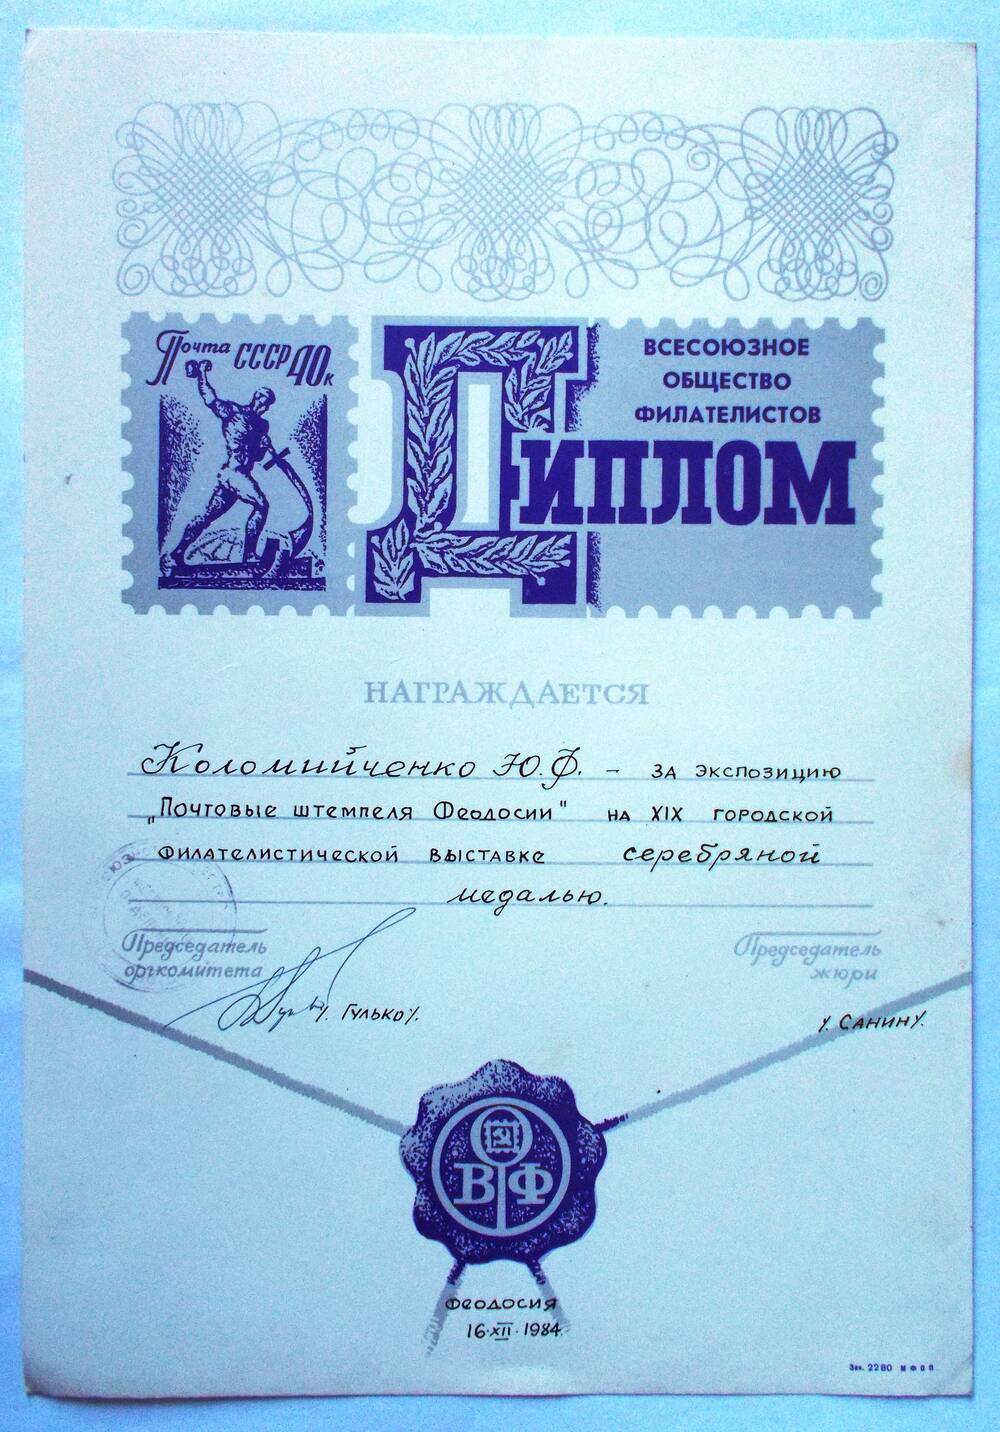 Диплом Всесоюзного общества филателистов Коломийченко Ю.Ф. 16.12.1984 г.